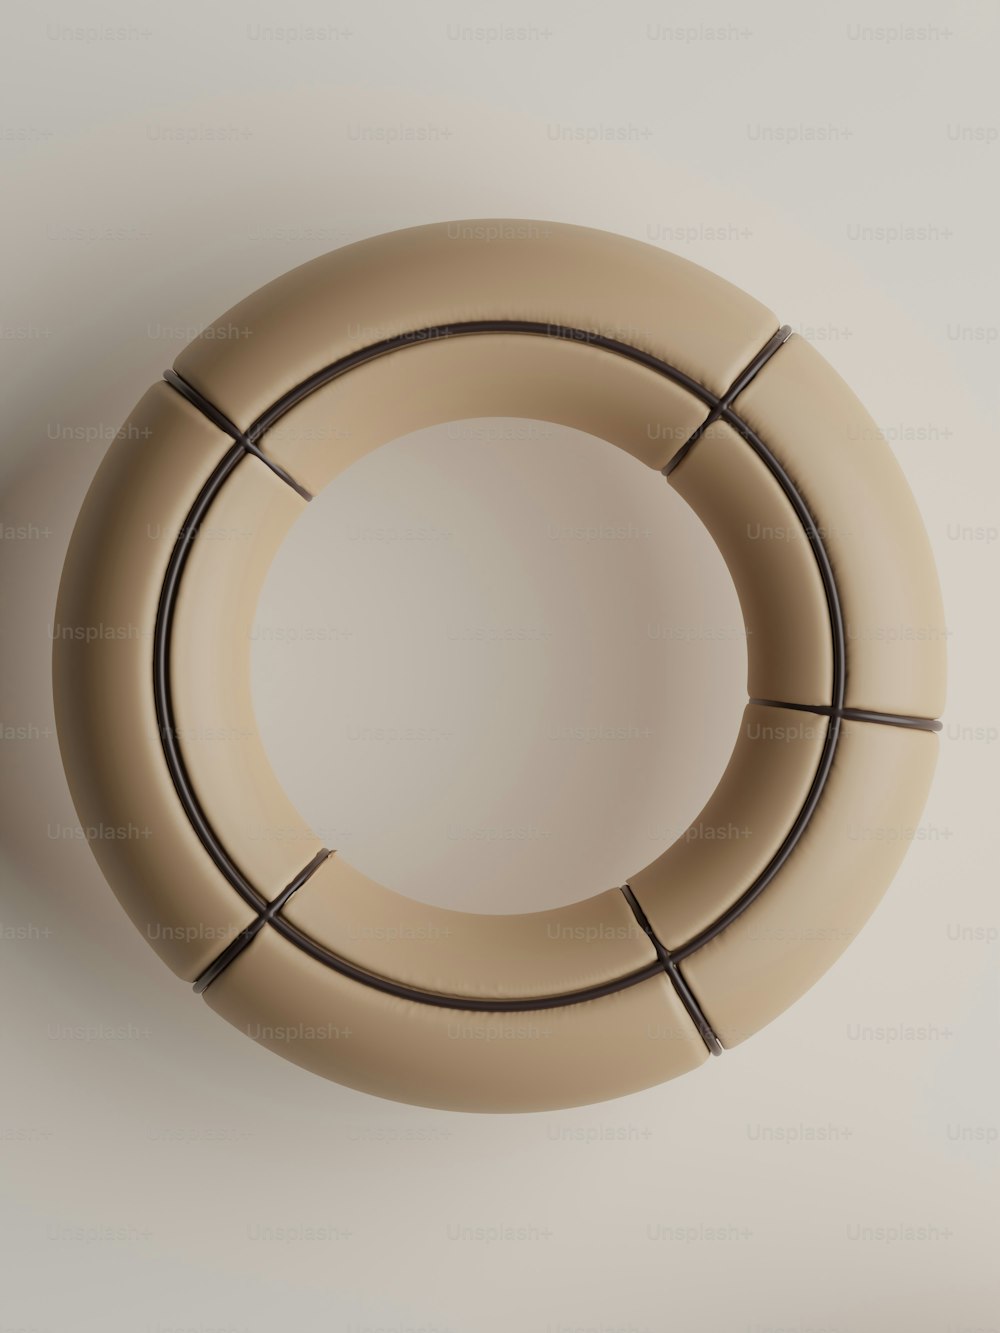 um objeto circular é mostrado em uma superfície branca